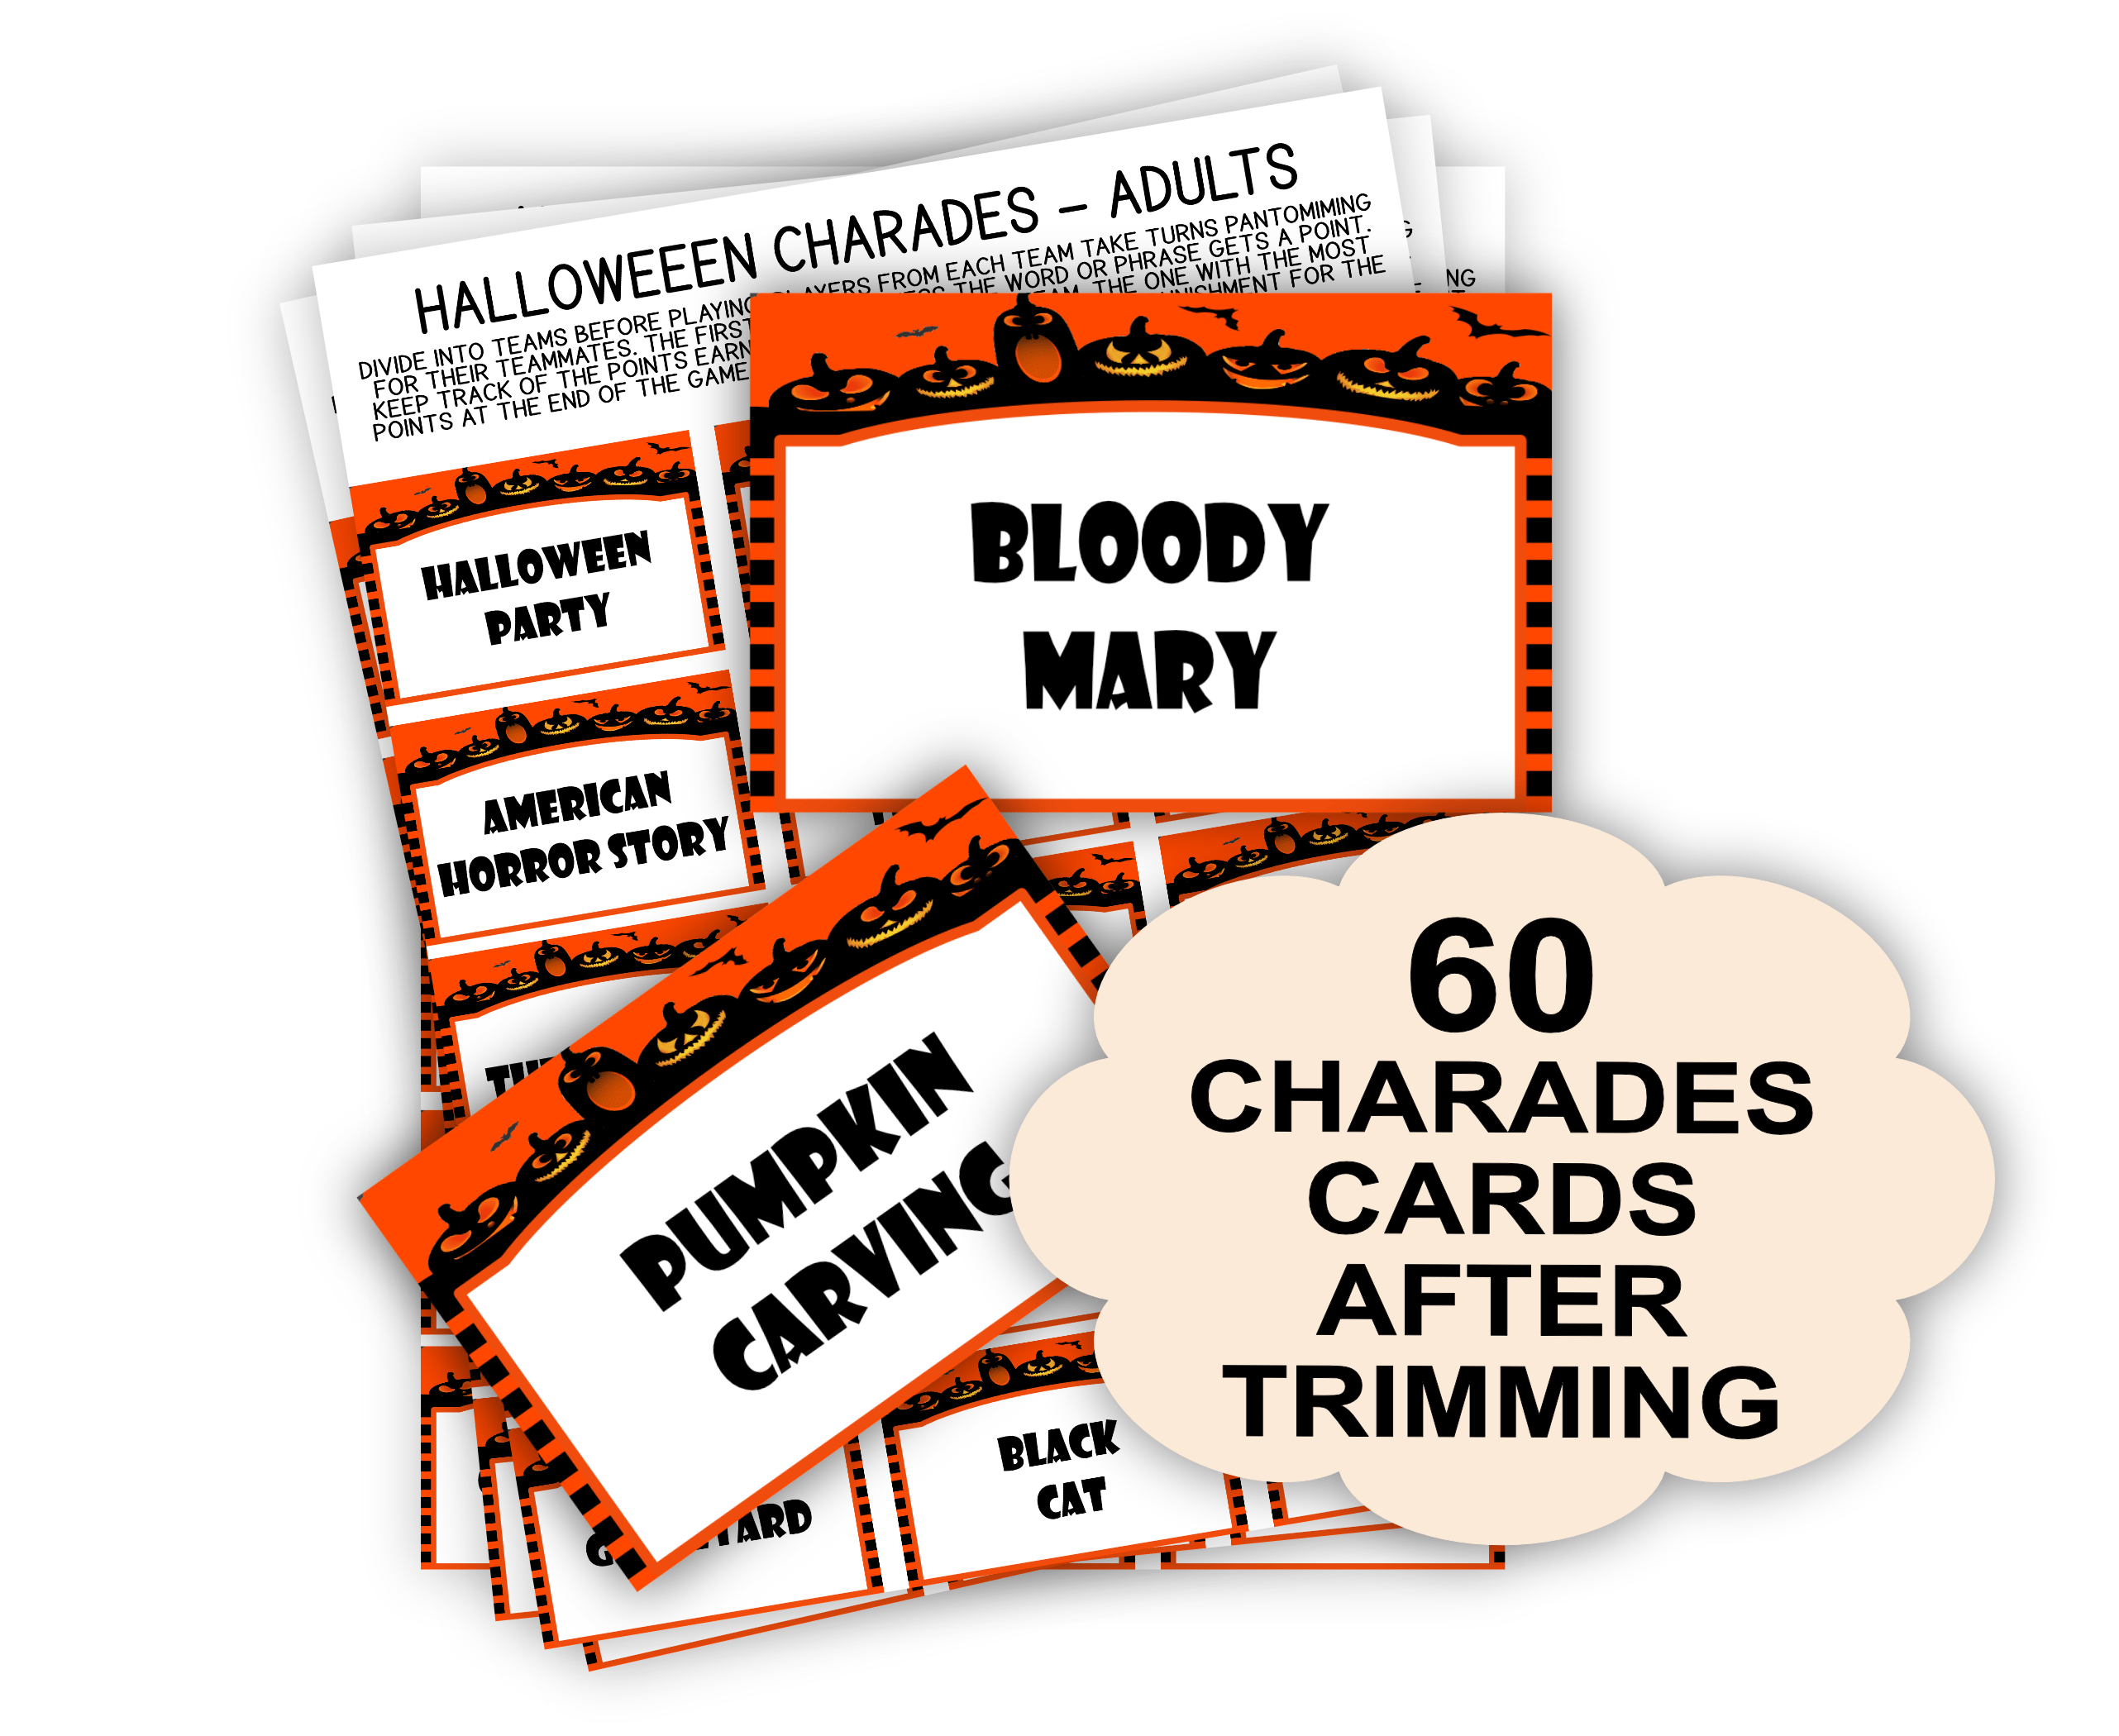 Halloween Printable Halloween Charades for Adults – Fun Party Games Adult Halloween Charades